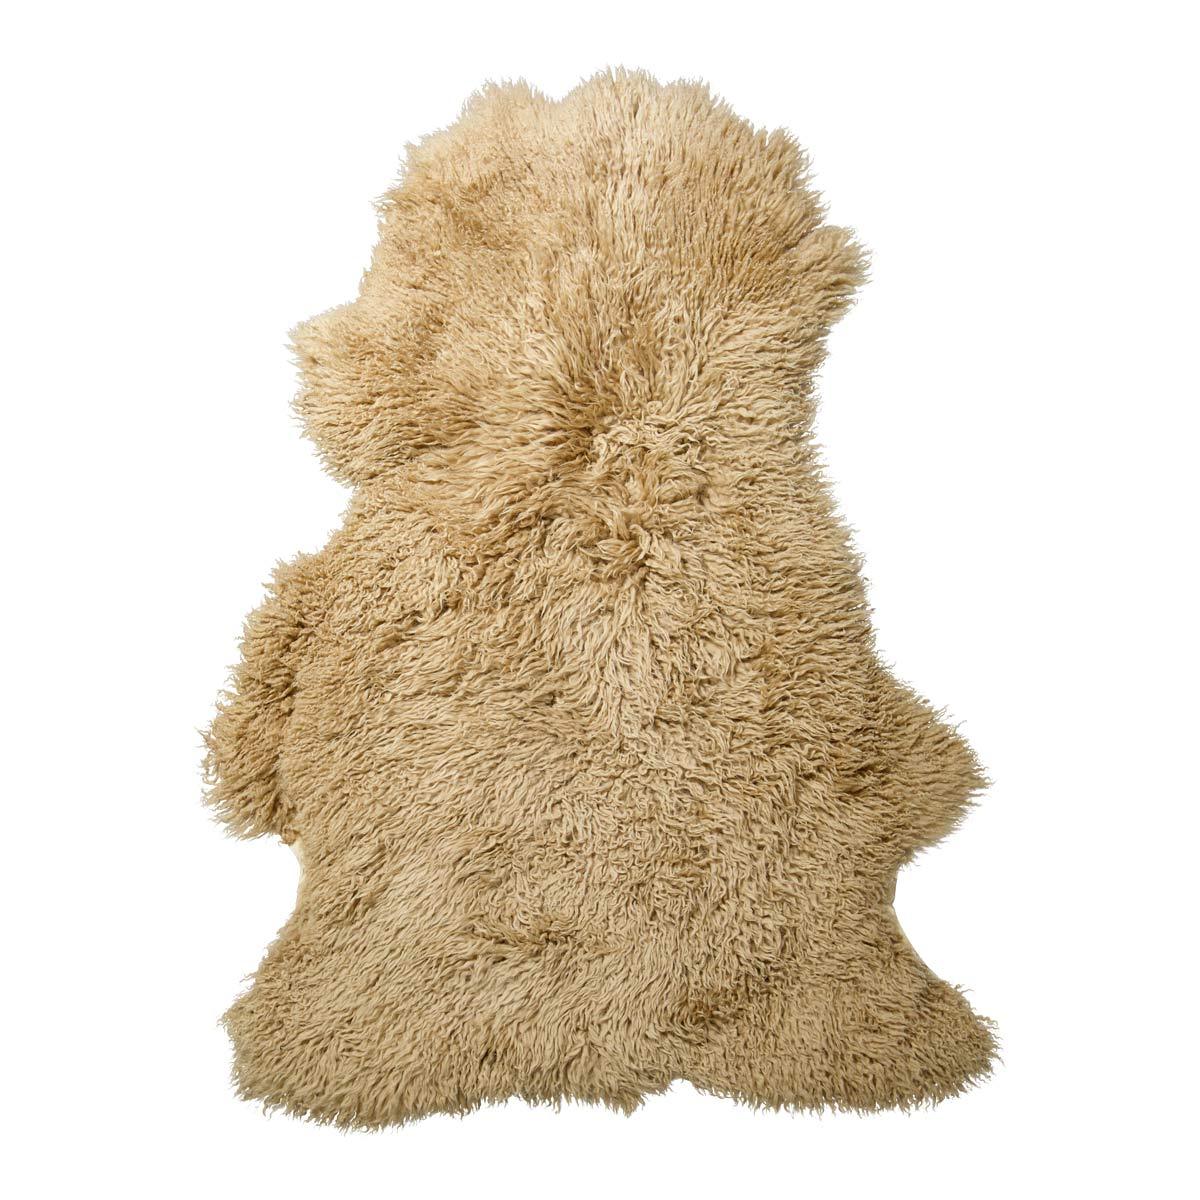 Long Wool Curly Sheepskin Rug │ 90x60 cm - Naturescollection.eu